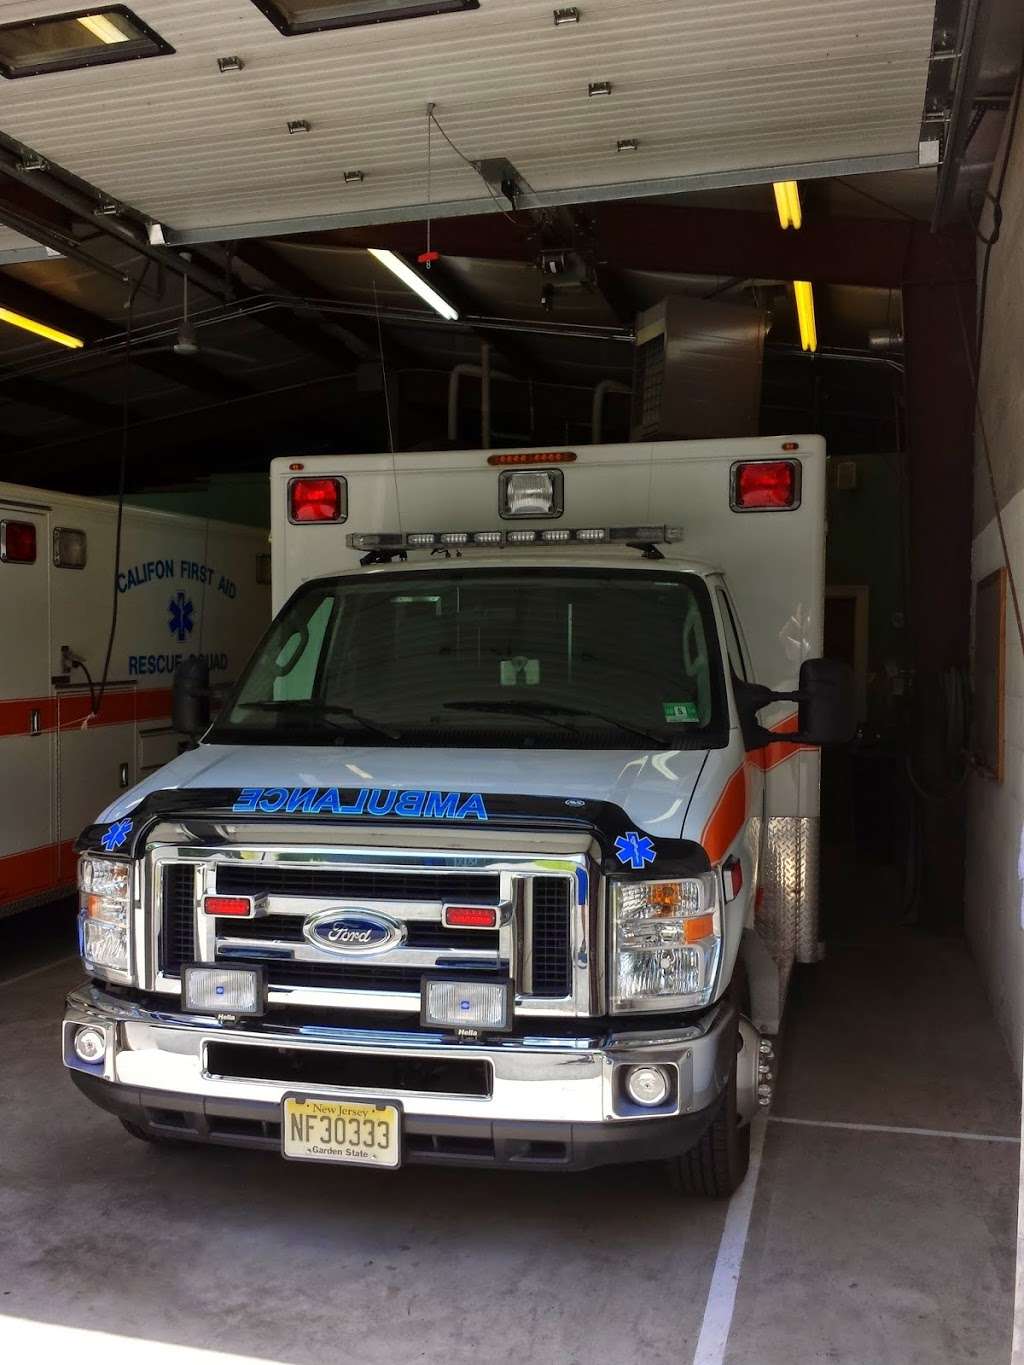 Califon First Aid Squad | 107 Bank St, Califon, NJ 07830 | Phone: (908) 832-7410